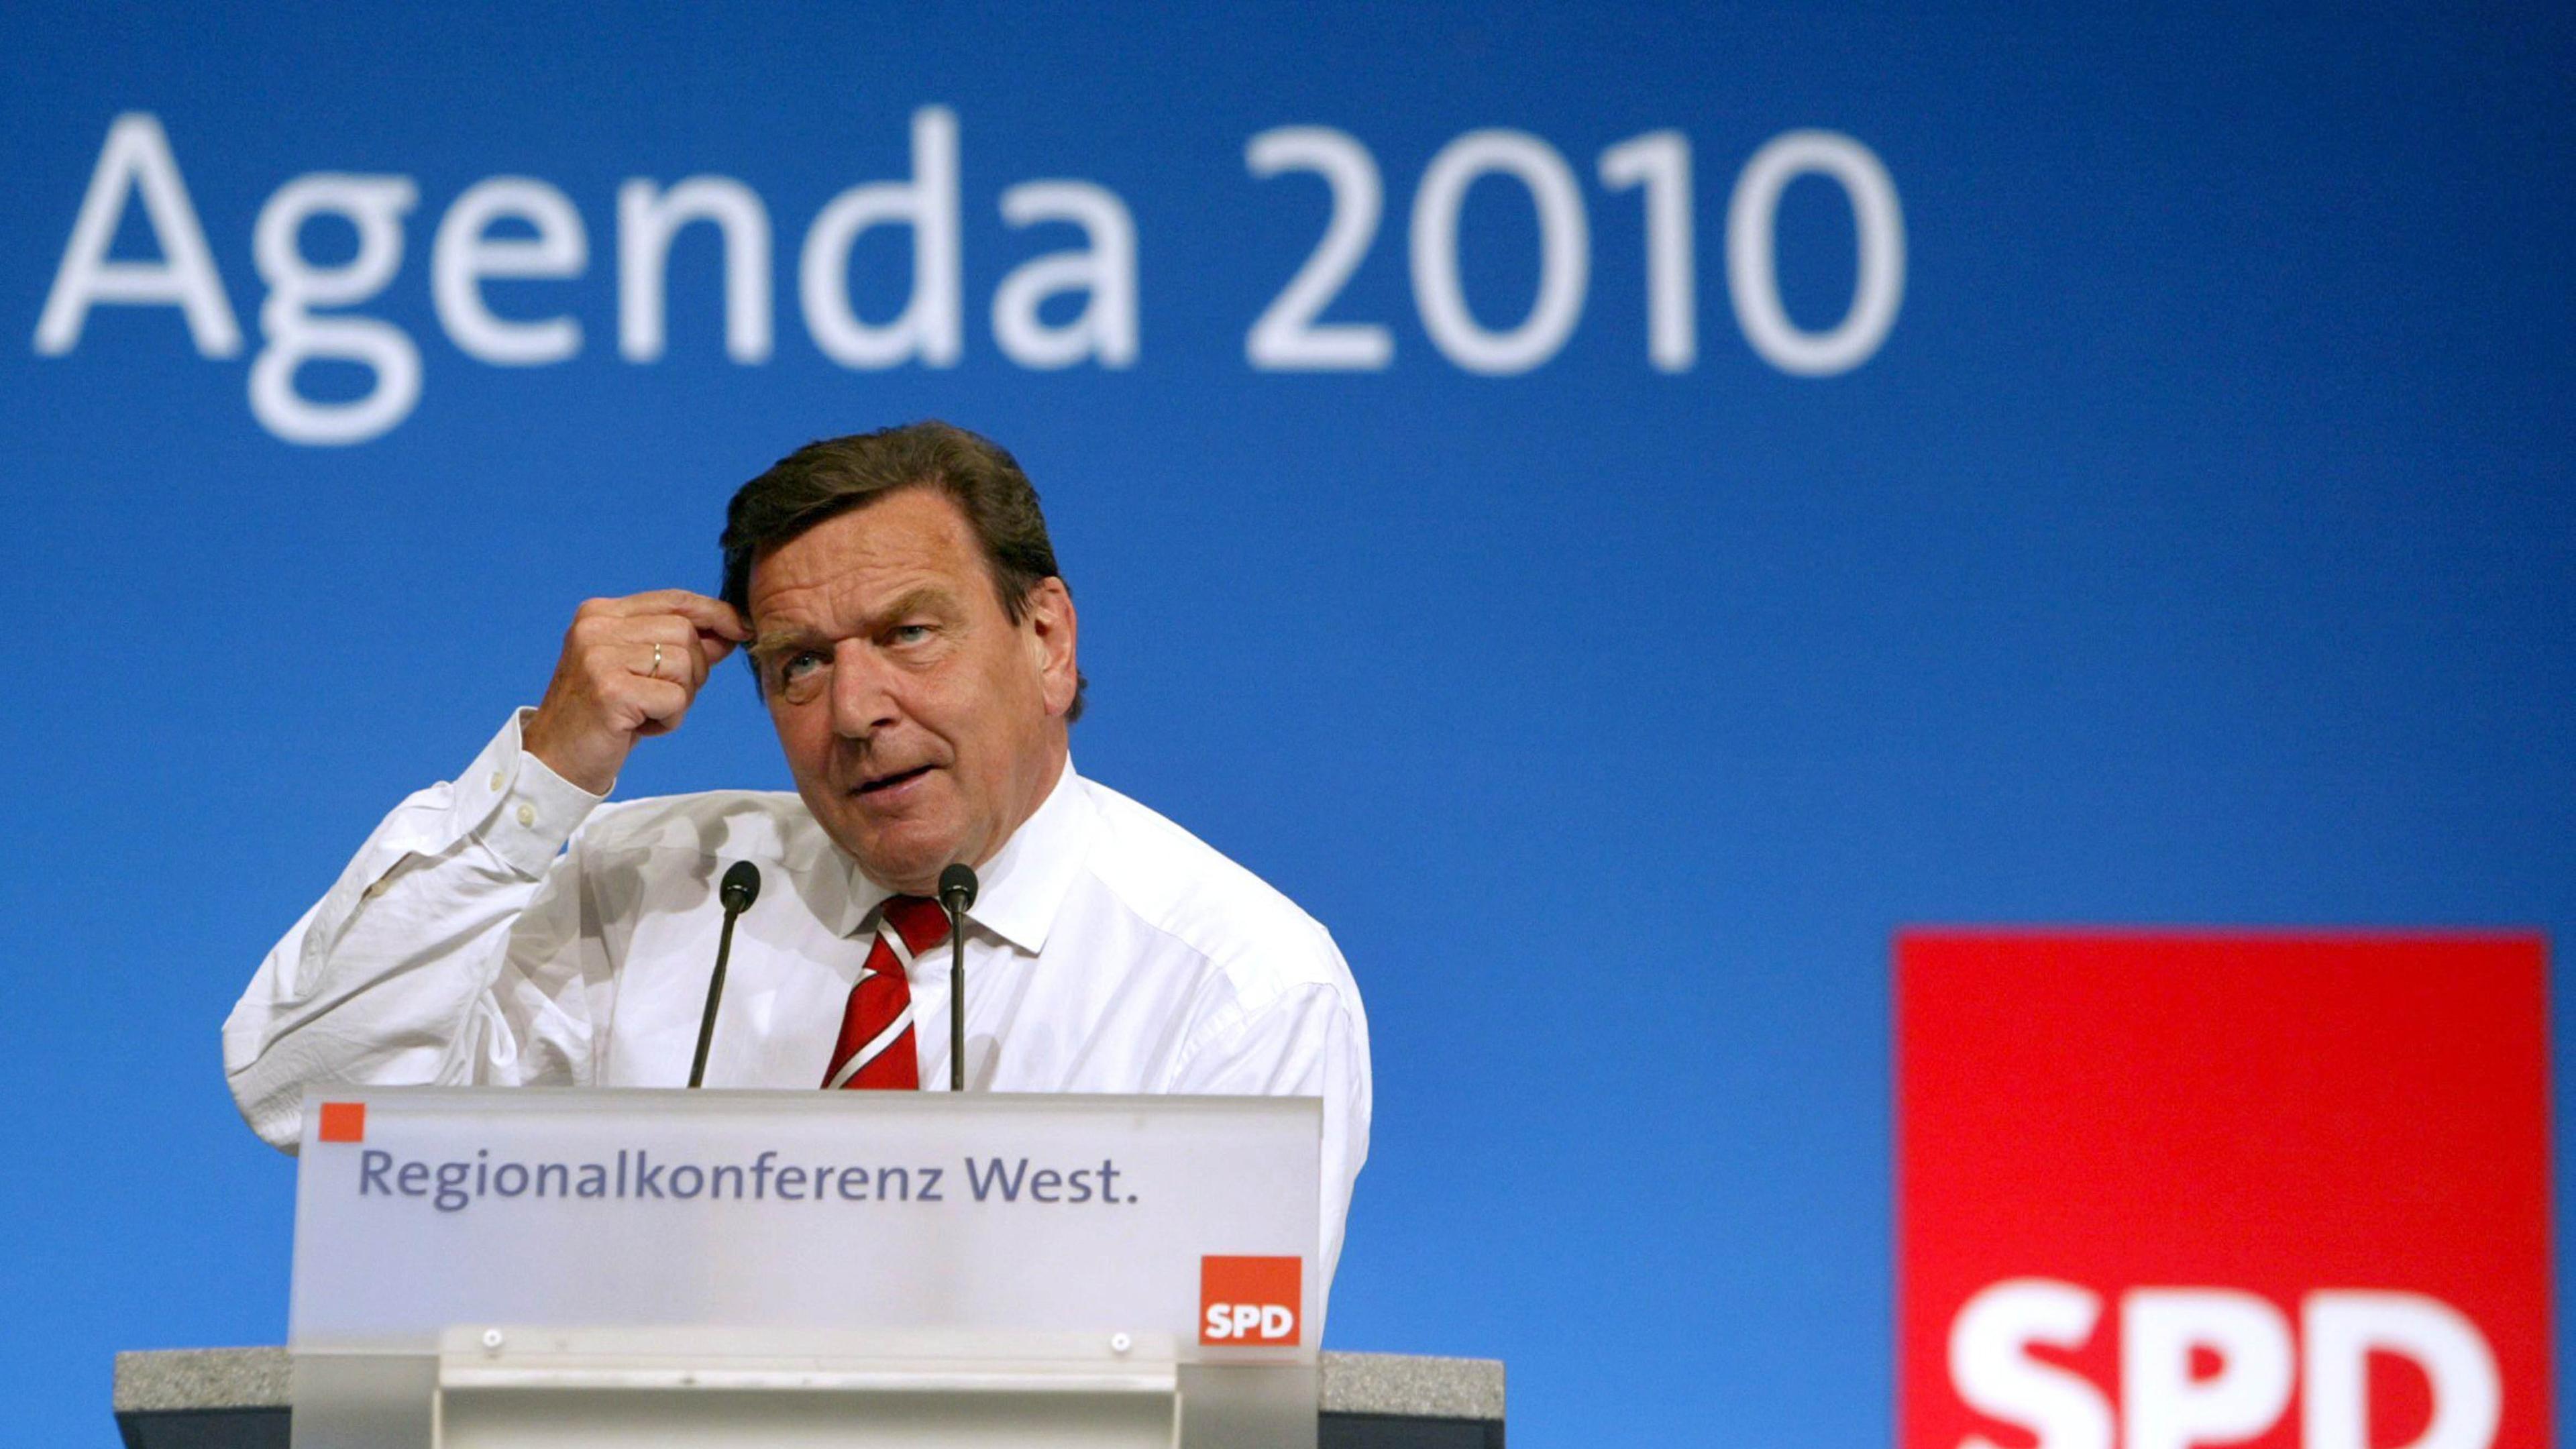 Gerhard Schröder spricht in Bonn zur Agenda 2010